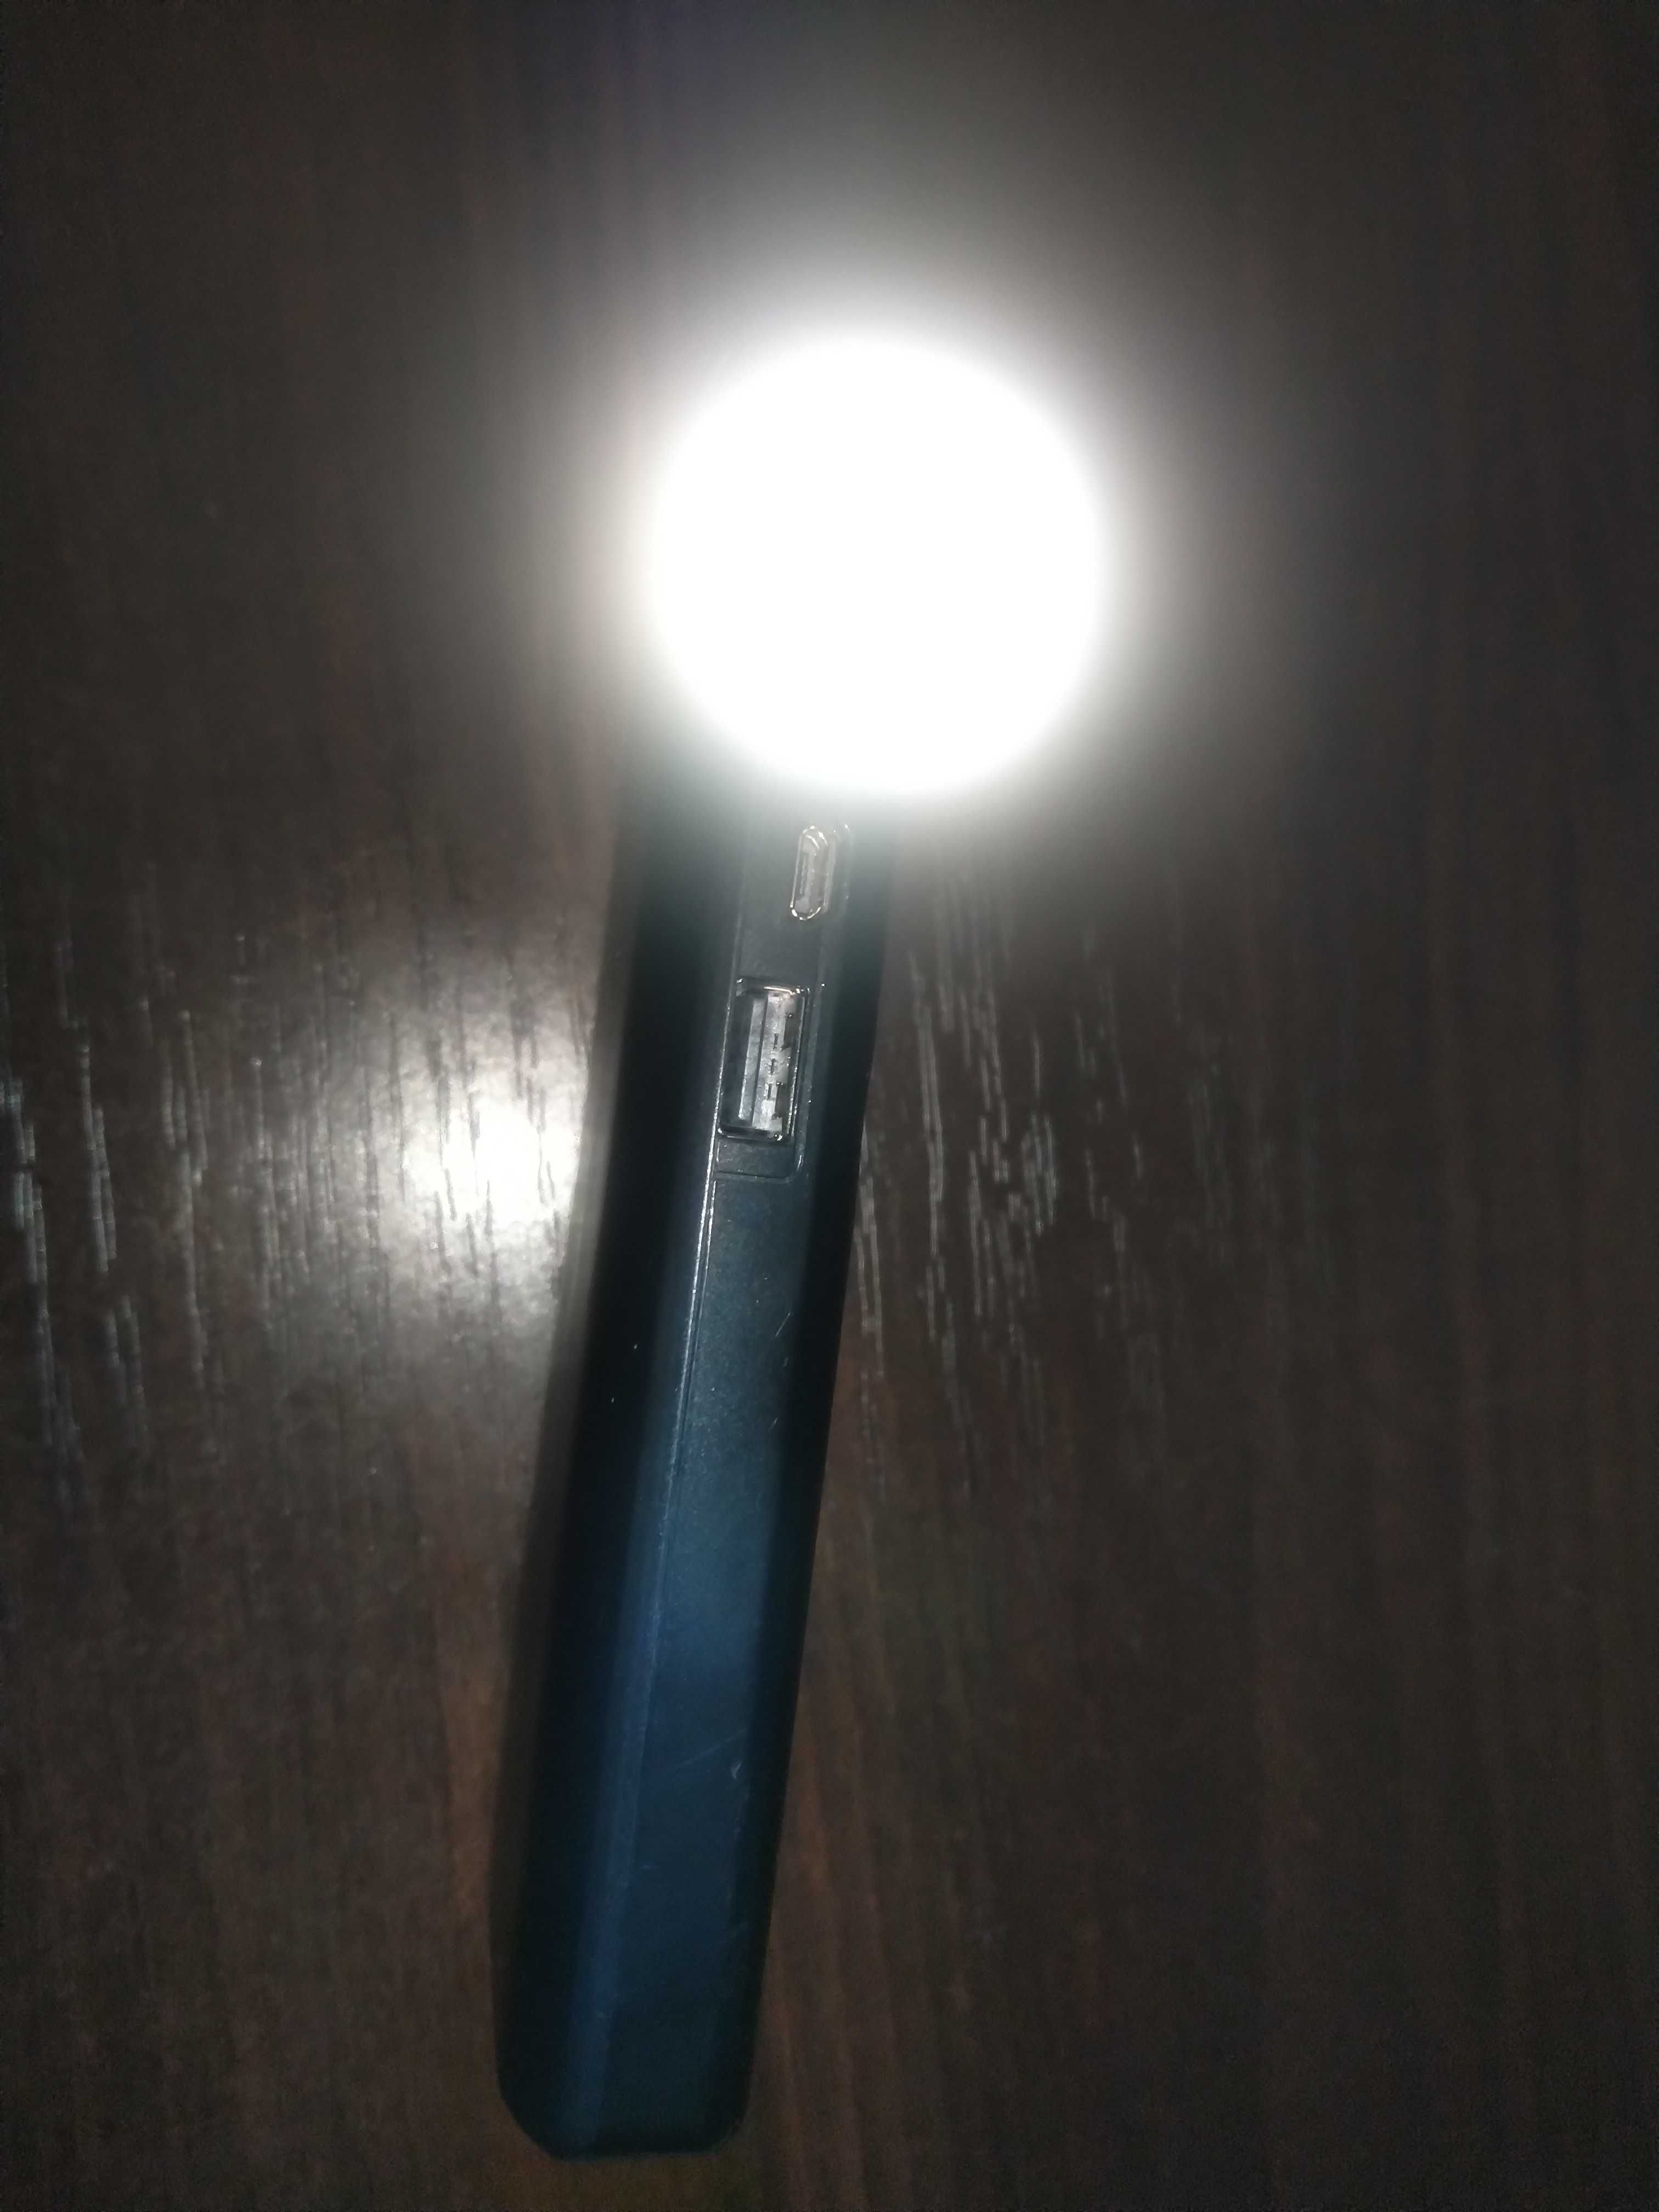 Міні лампа світлодіодна USB